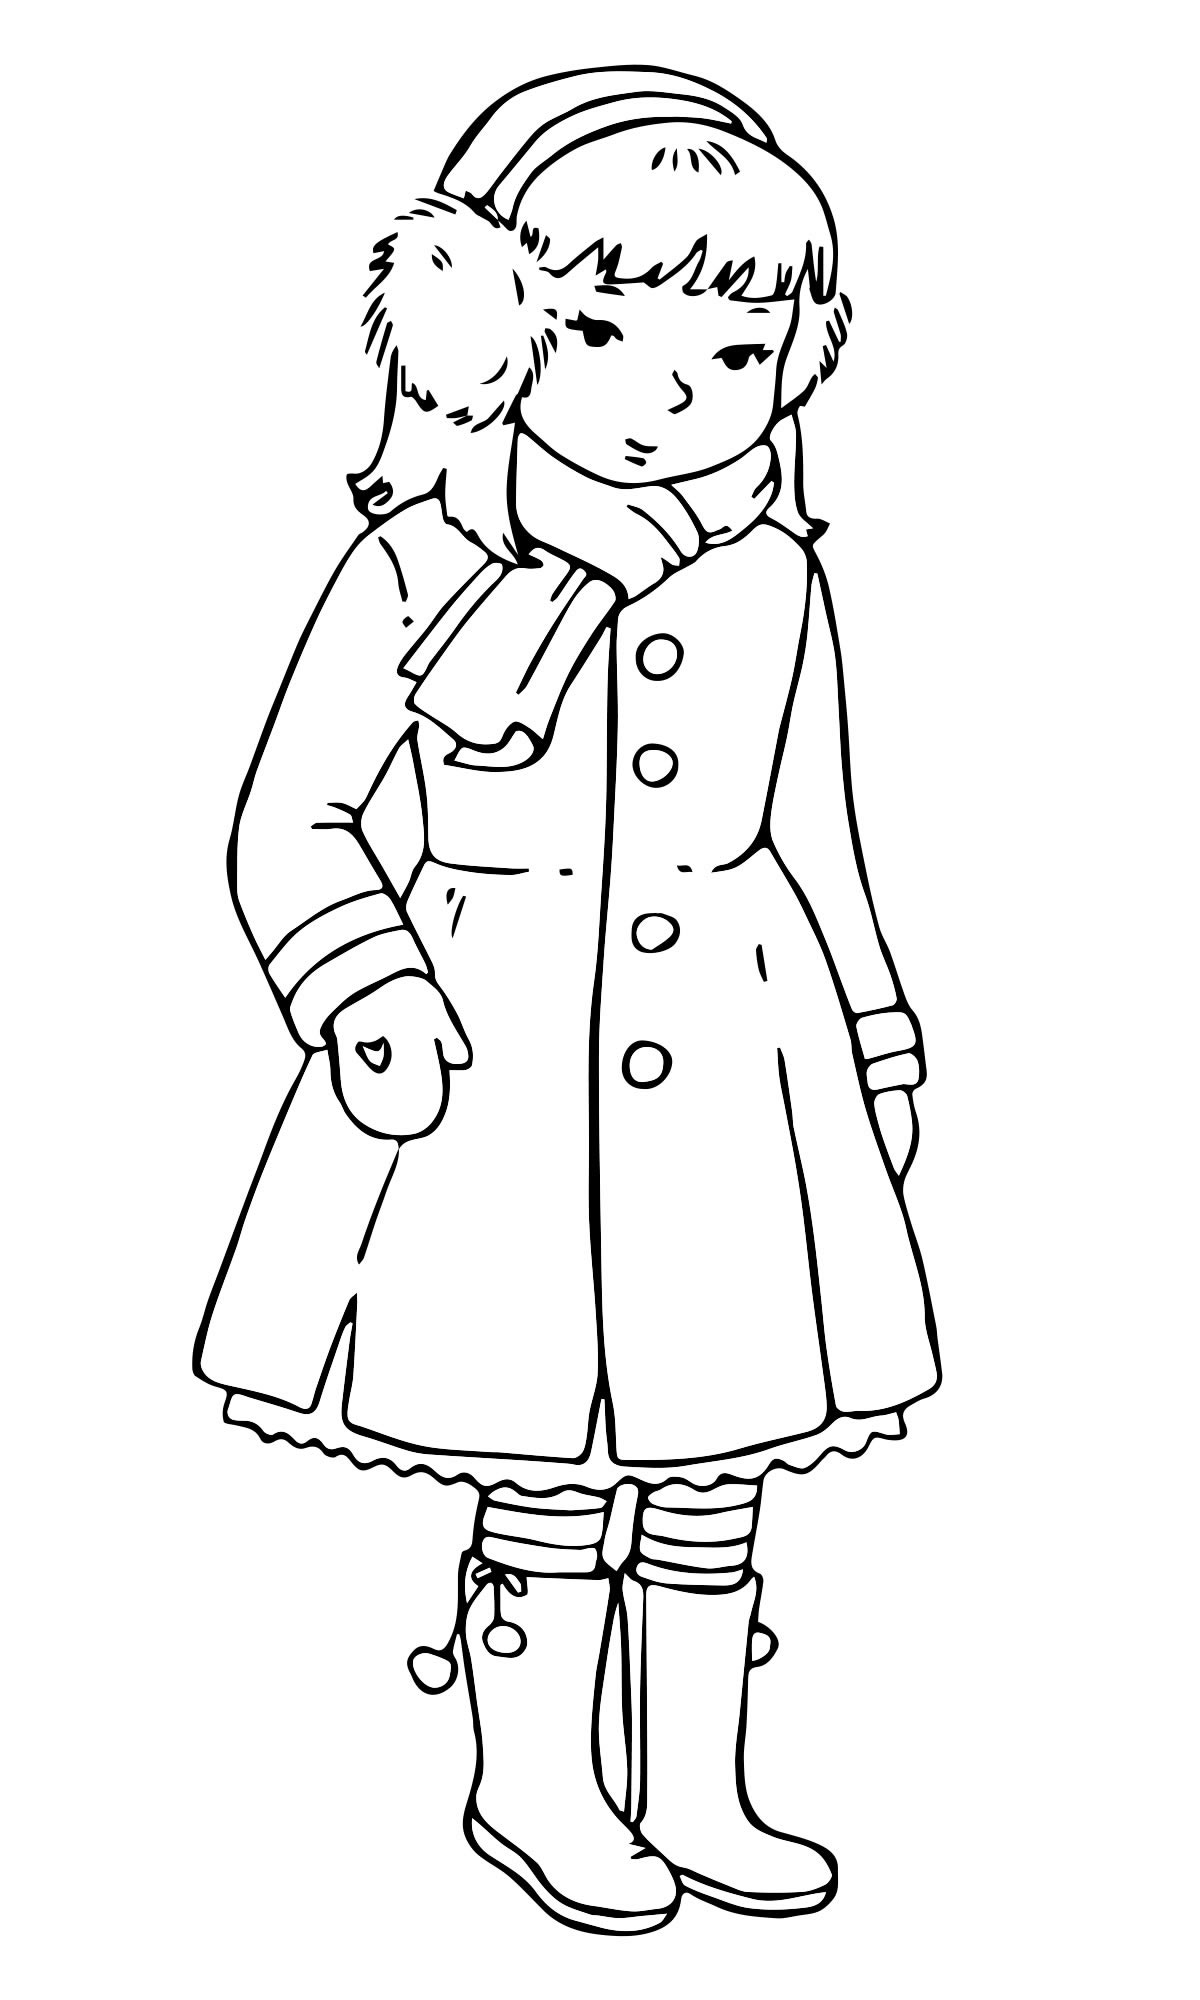 Раскраска для детей женское пальто